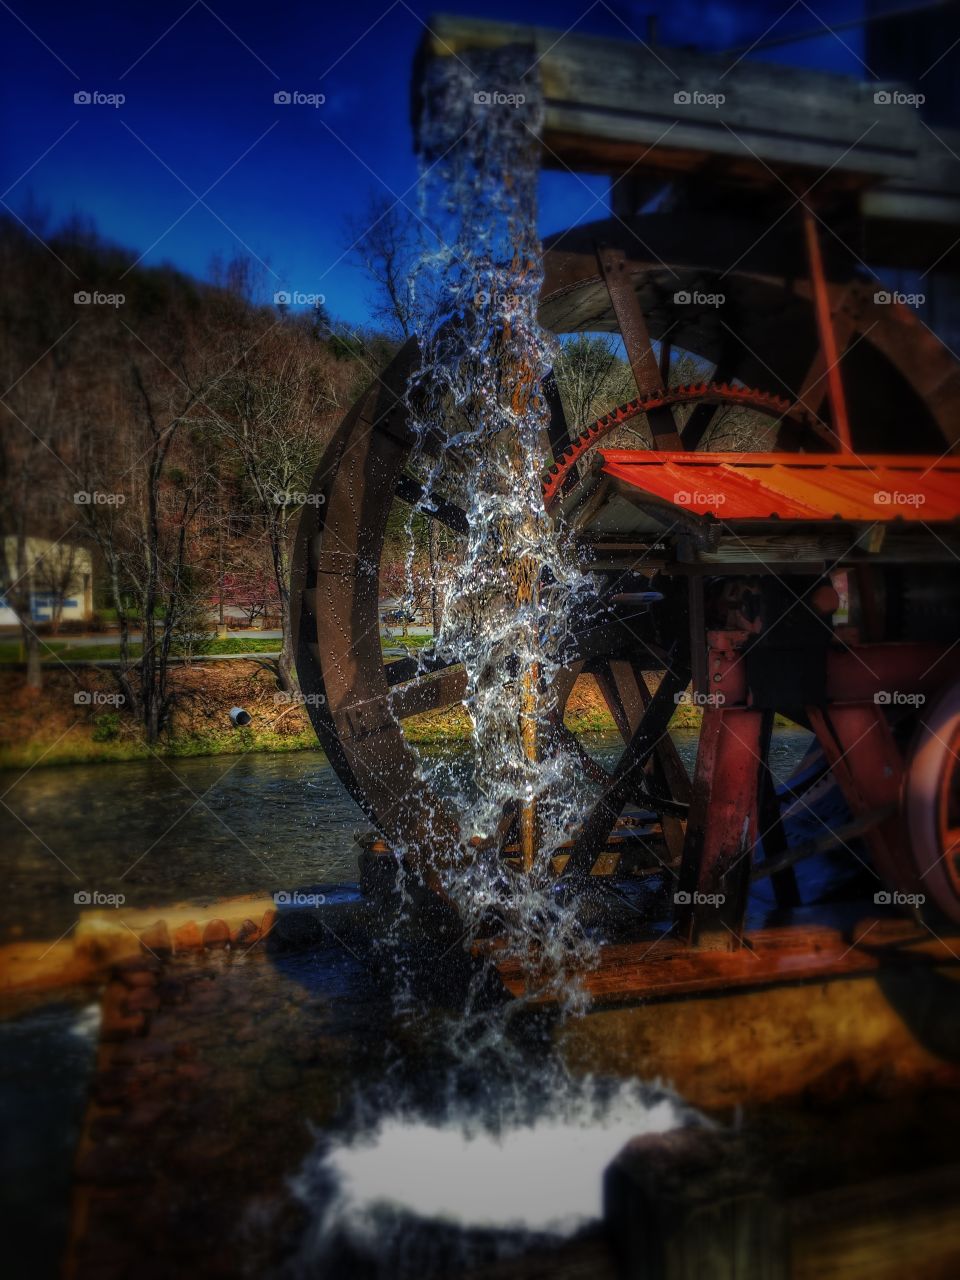 Water wheel barrel